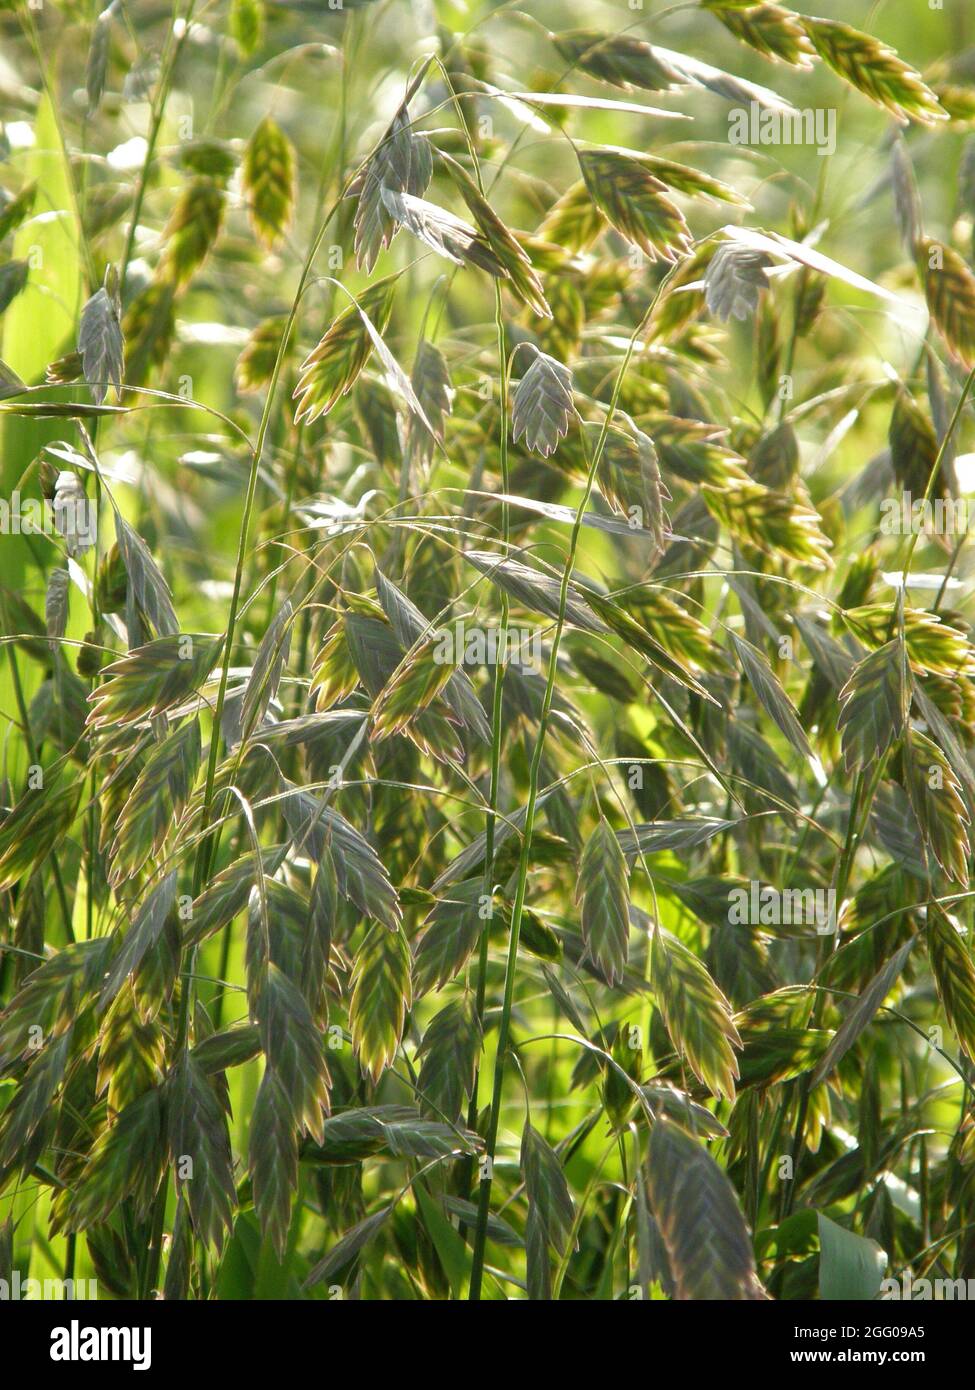 Des épillets ornementaux en suspension aplatis d'avoine sauvage d'Amérique du Nord (Chasmanthium latifolium) dans un jardin en septembre Banque D'Images